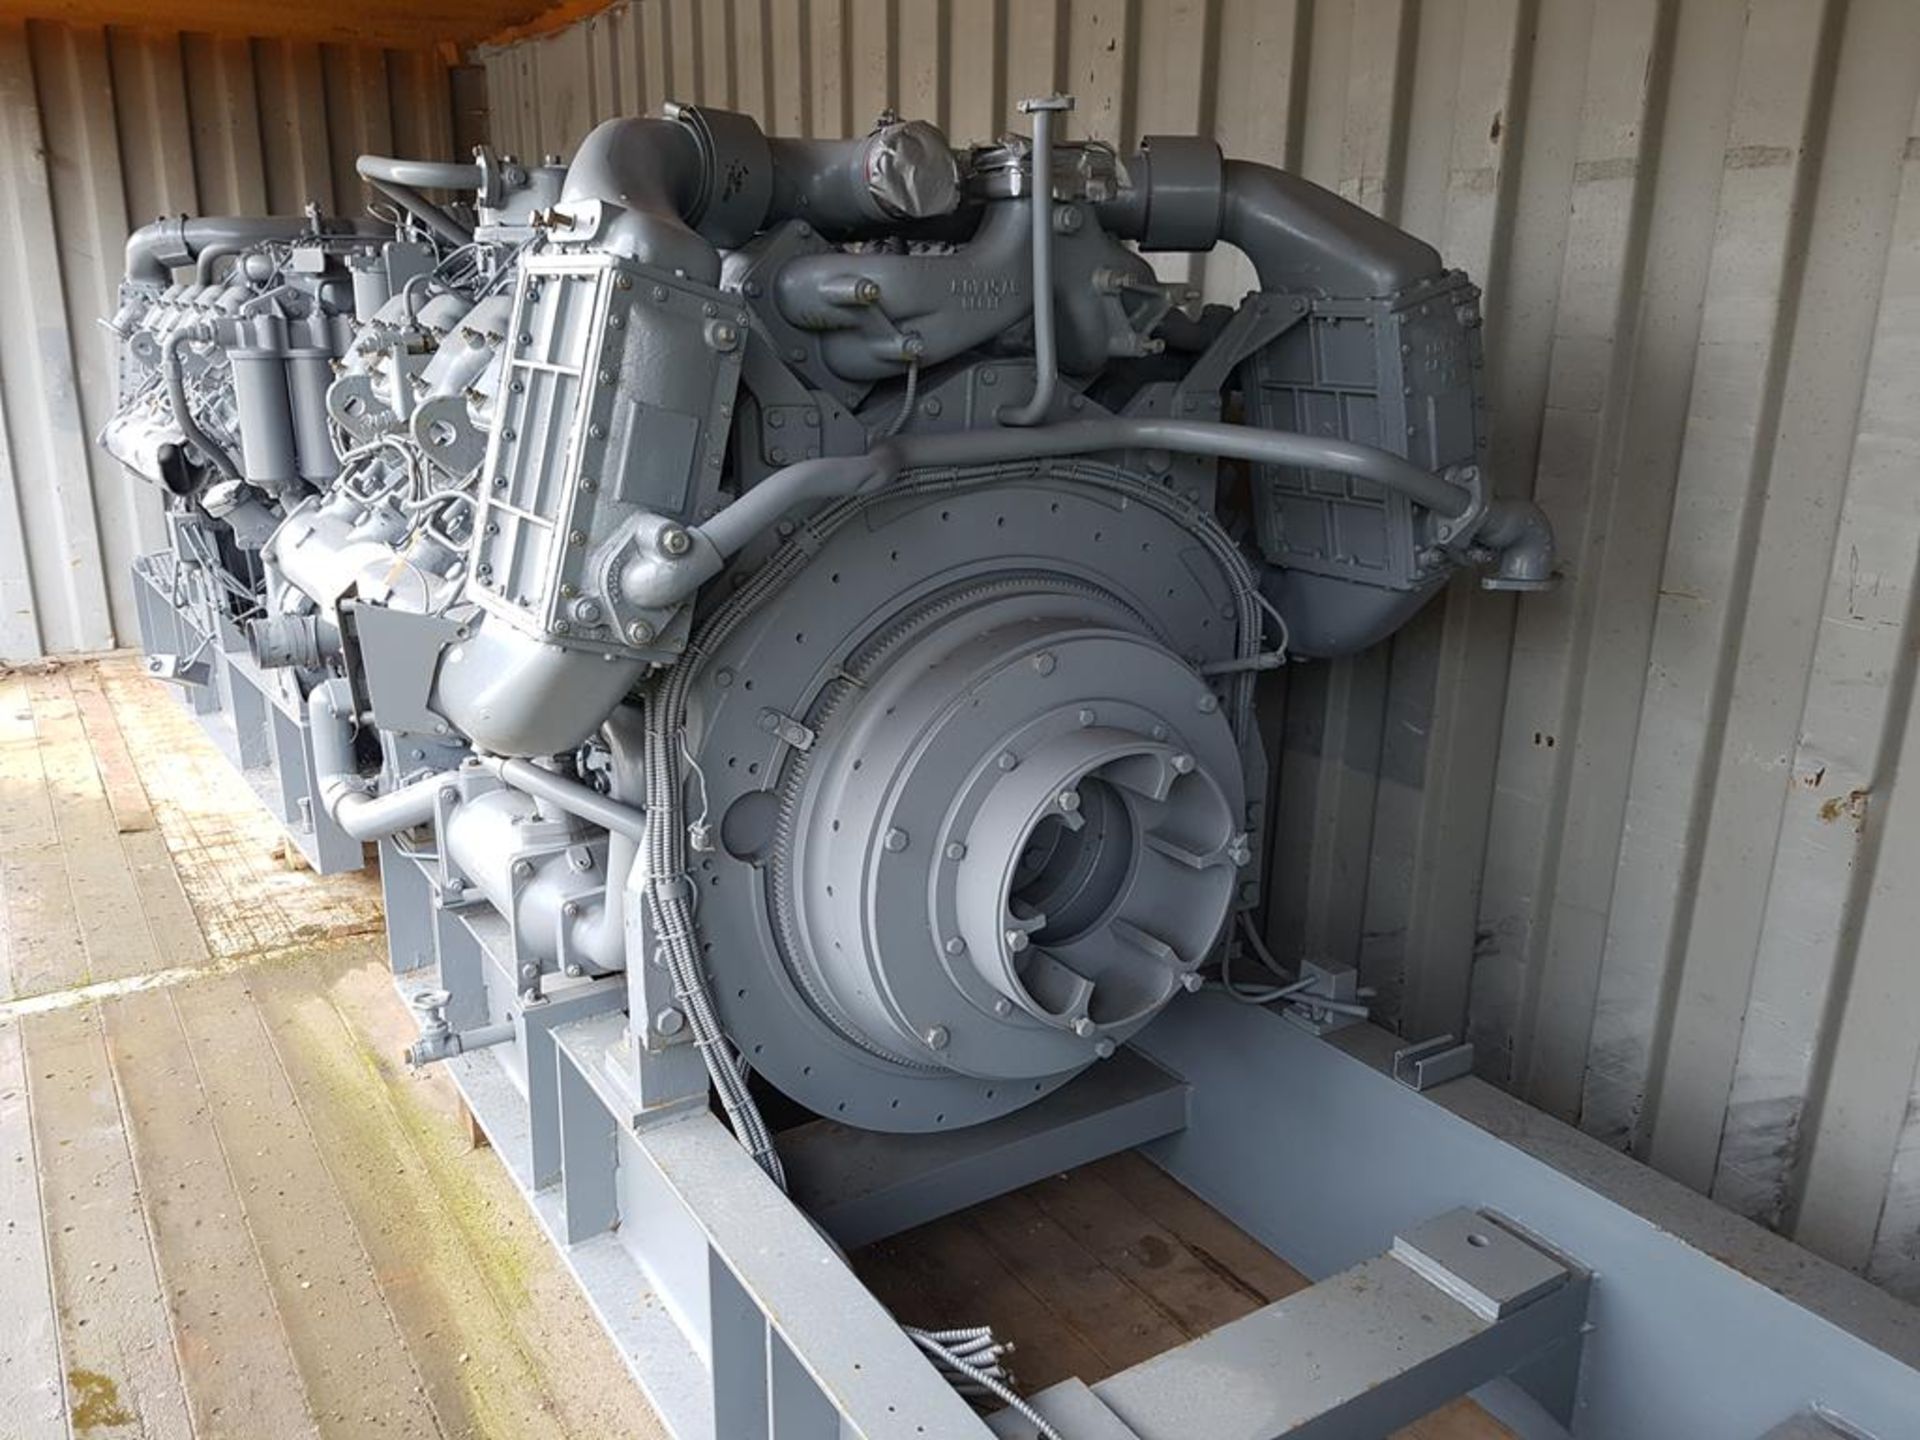 Dorman V8 Diesel engine - Image 2 of 3